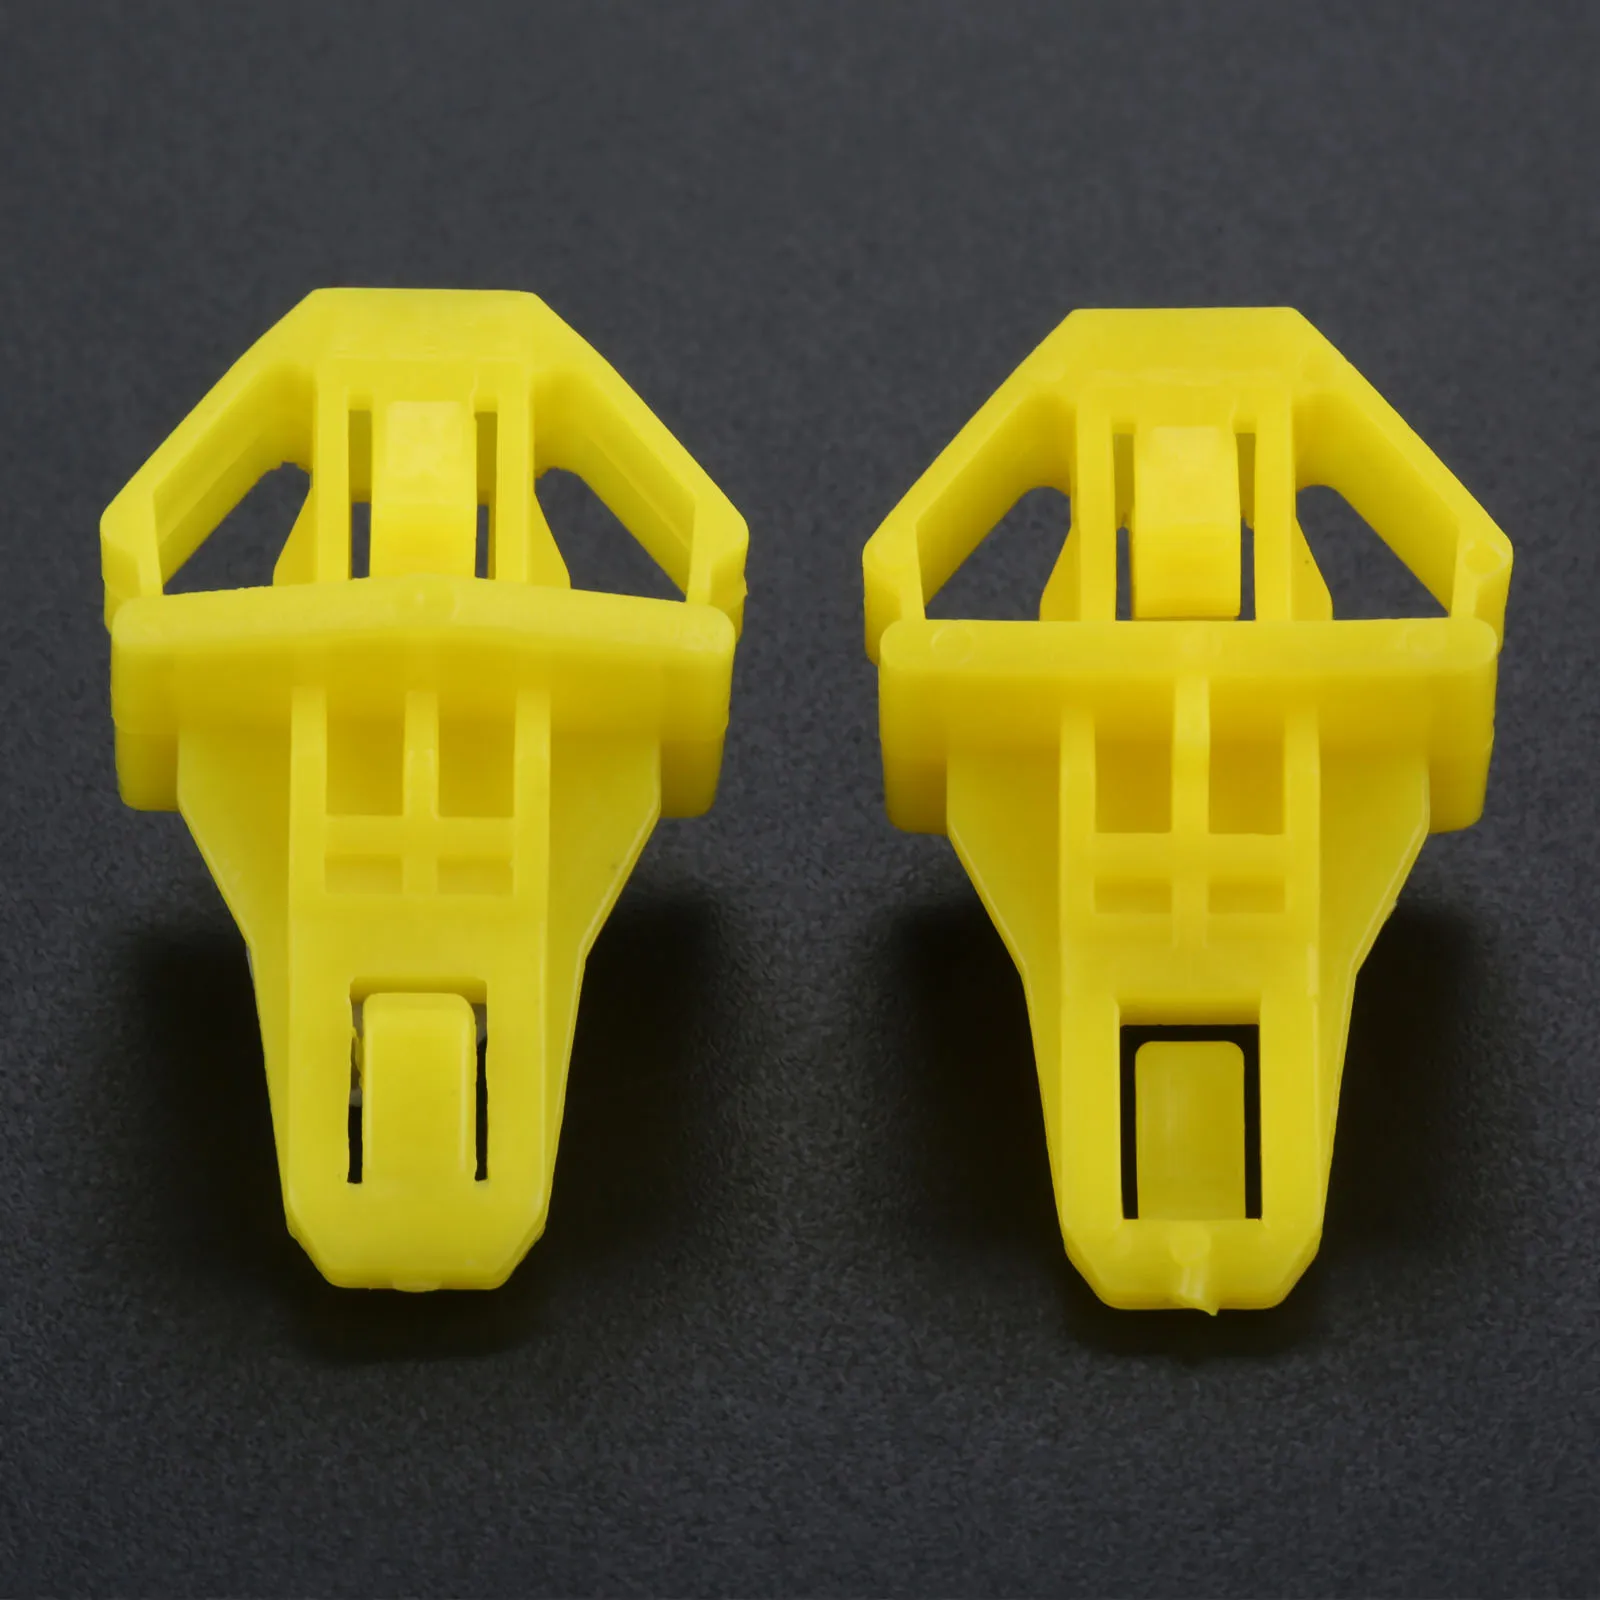 Yetaha 20 шт Пластиковые заклепки для автомобиля решетка радиатора фиксатор зажимы крепеж для Honda CR-V 2012+ ACCORD 91578-T0A-003